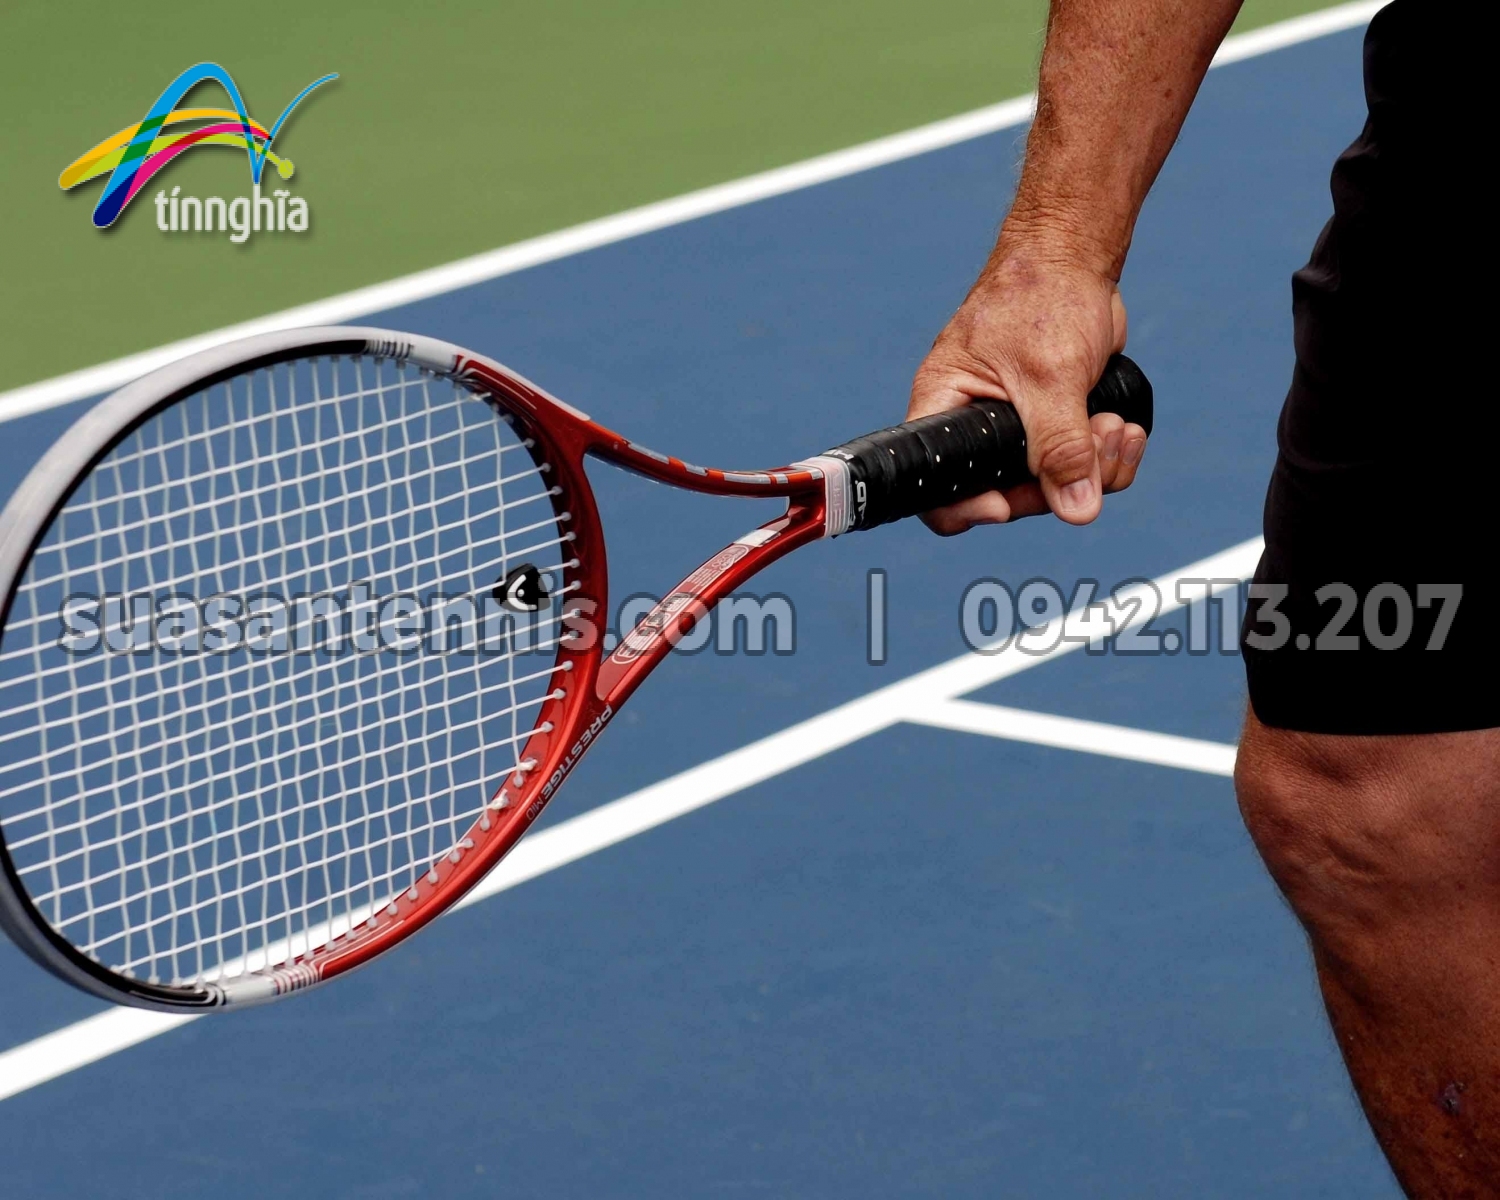 Kỹ thuật tennis căn bản - Cách cầm vợt